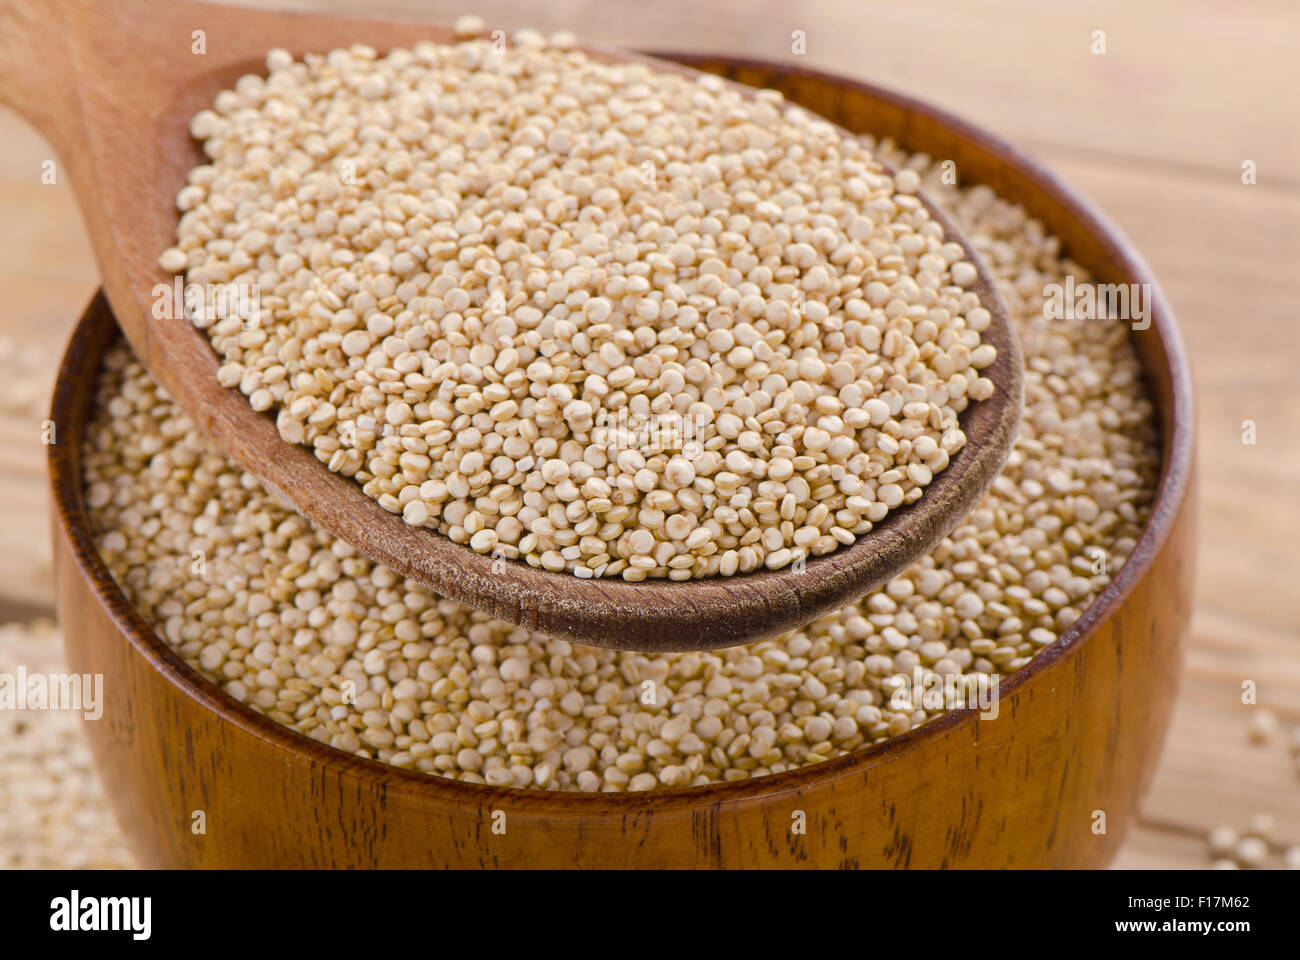 Les graines de quinoa dans une cuillère en bois. Selective focus Banque D'Images